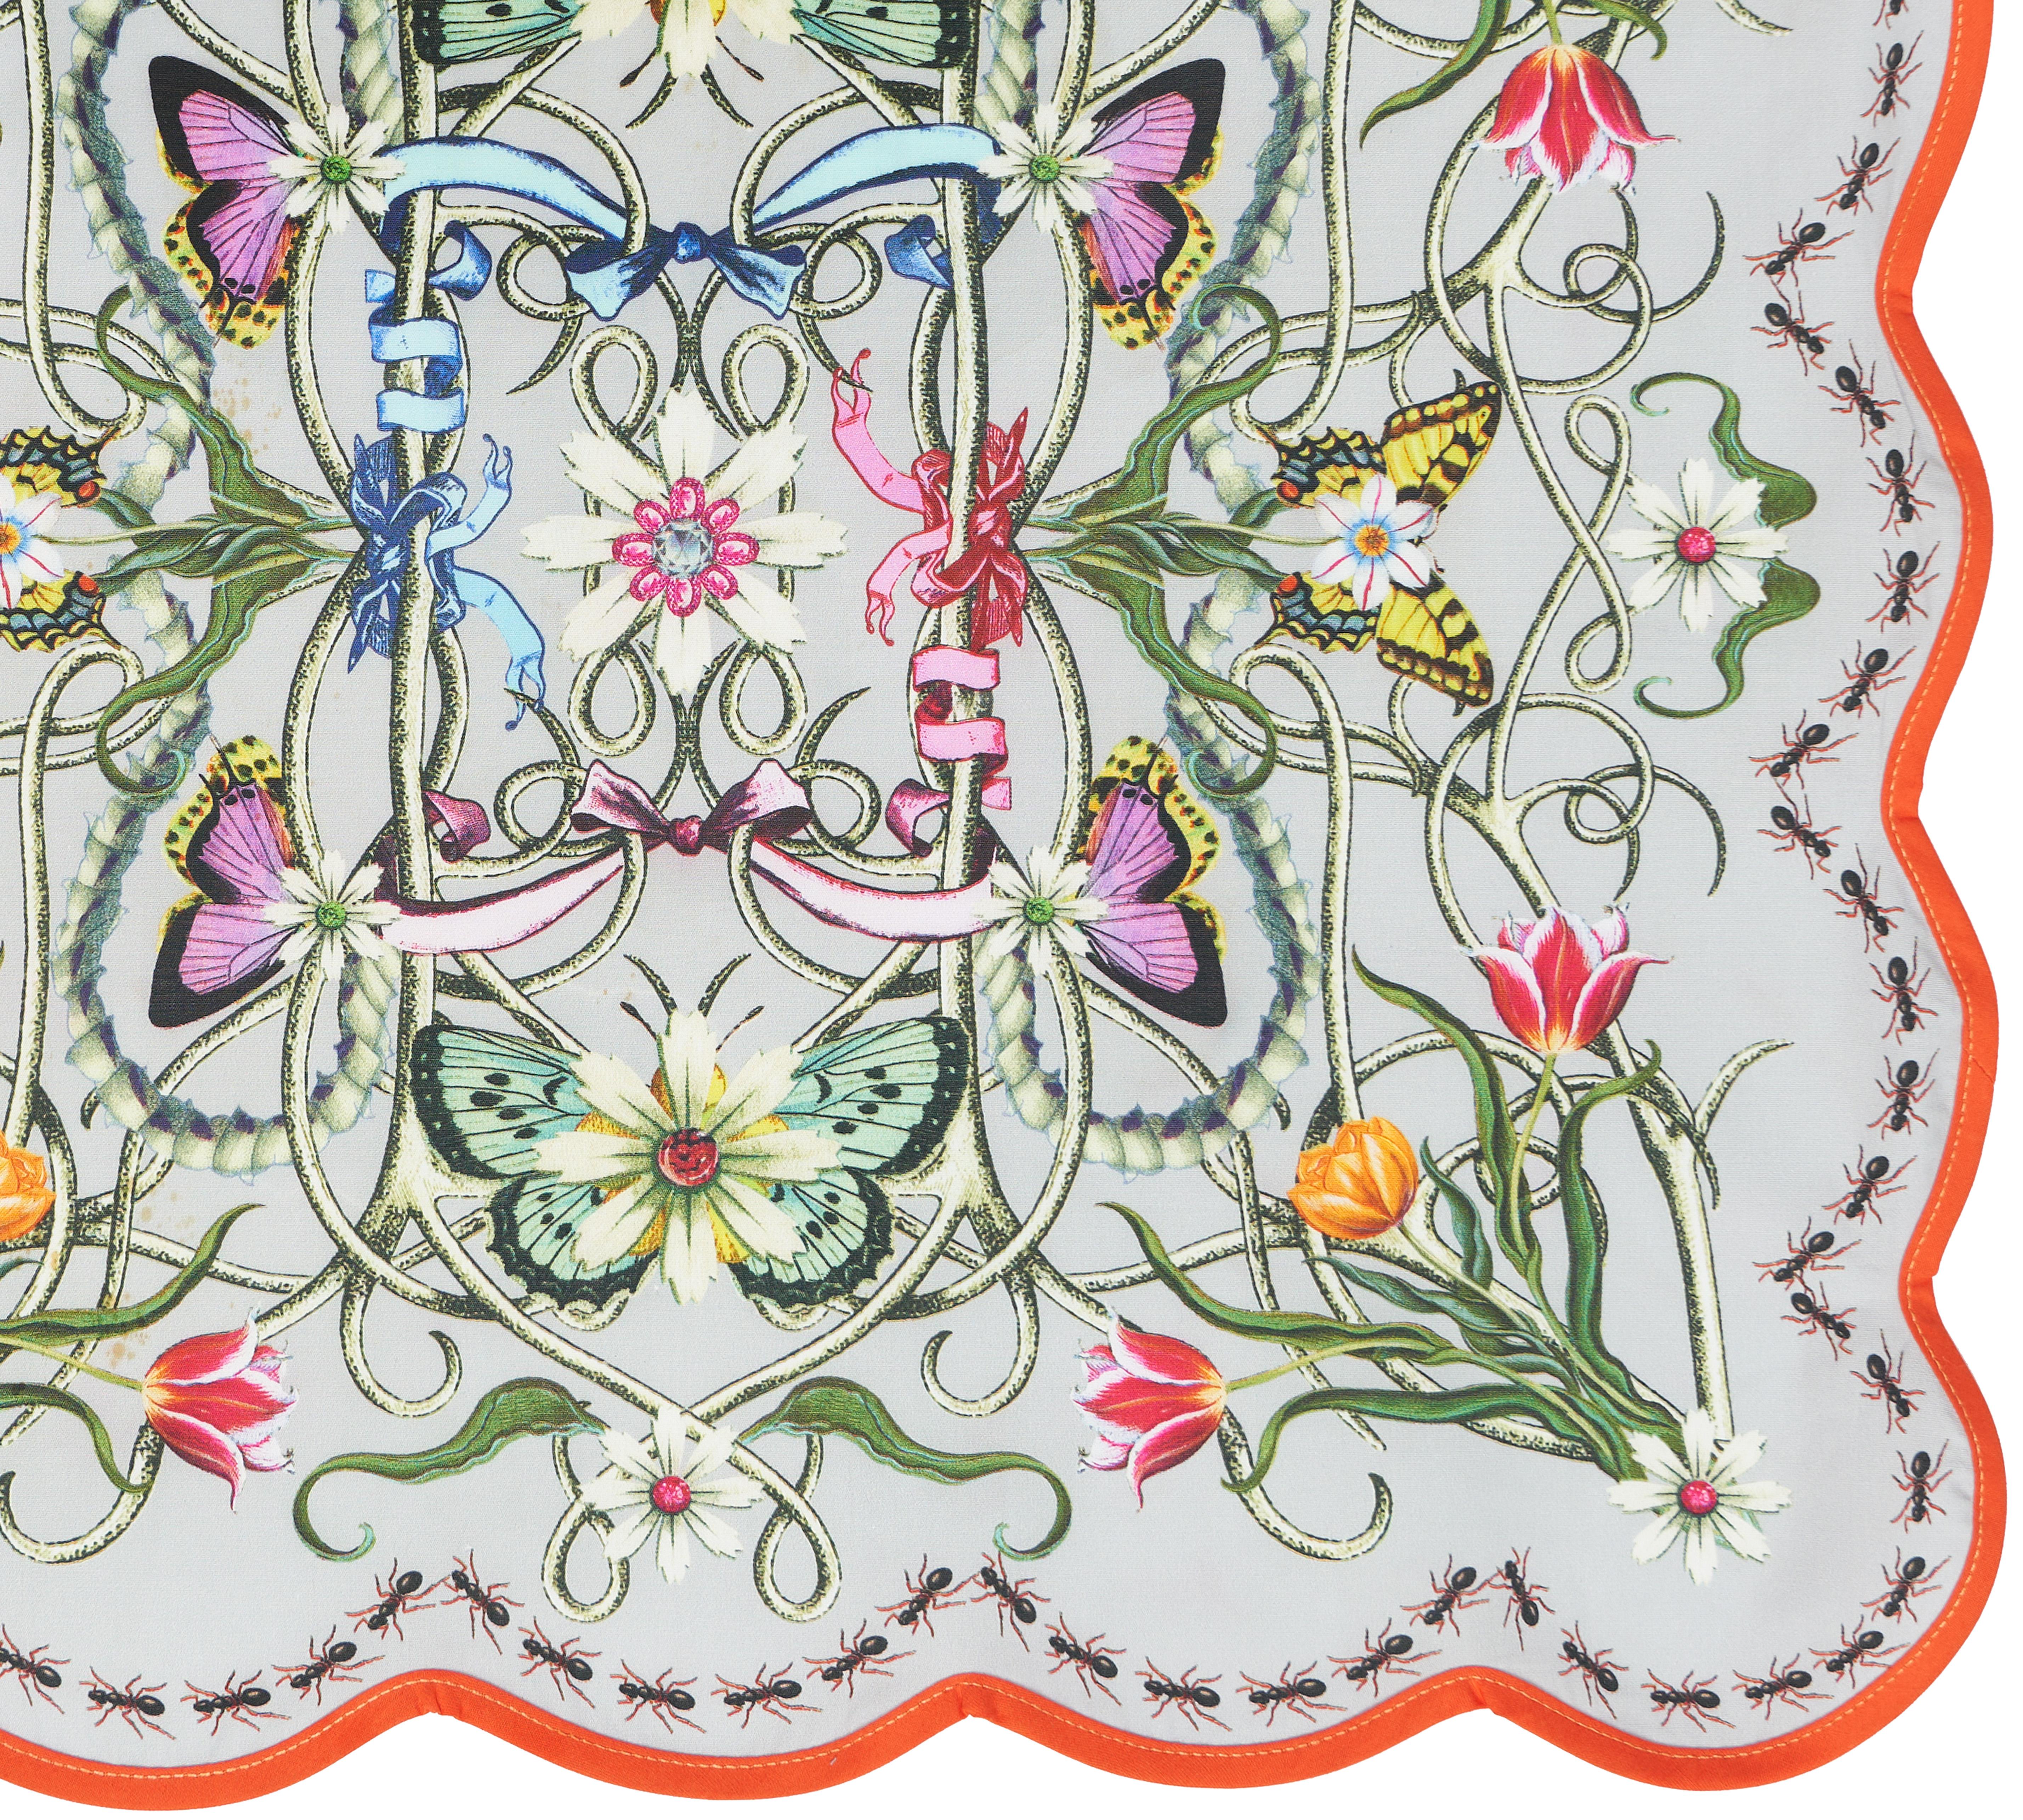 Inspirées par les caractéristiques ornementales de l'Art nouveau, ses lignes asymétriques ondulantes délimitent les fleurs fantaisistes d'Elizabeth Hayt, enchevêtrées de vignes, de nénuphars, de papillons dans de riches tons de couleurs et d'une